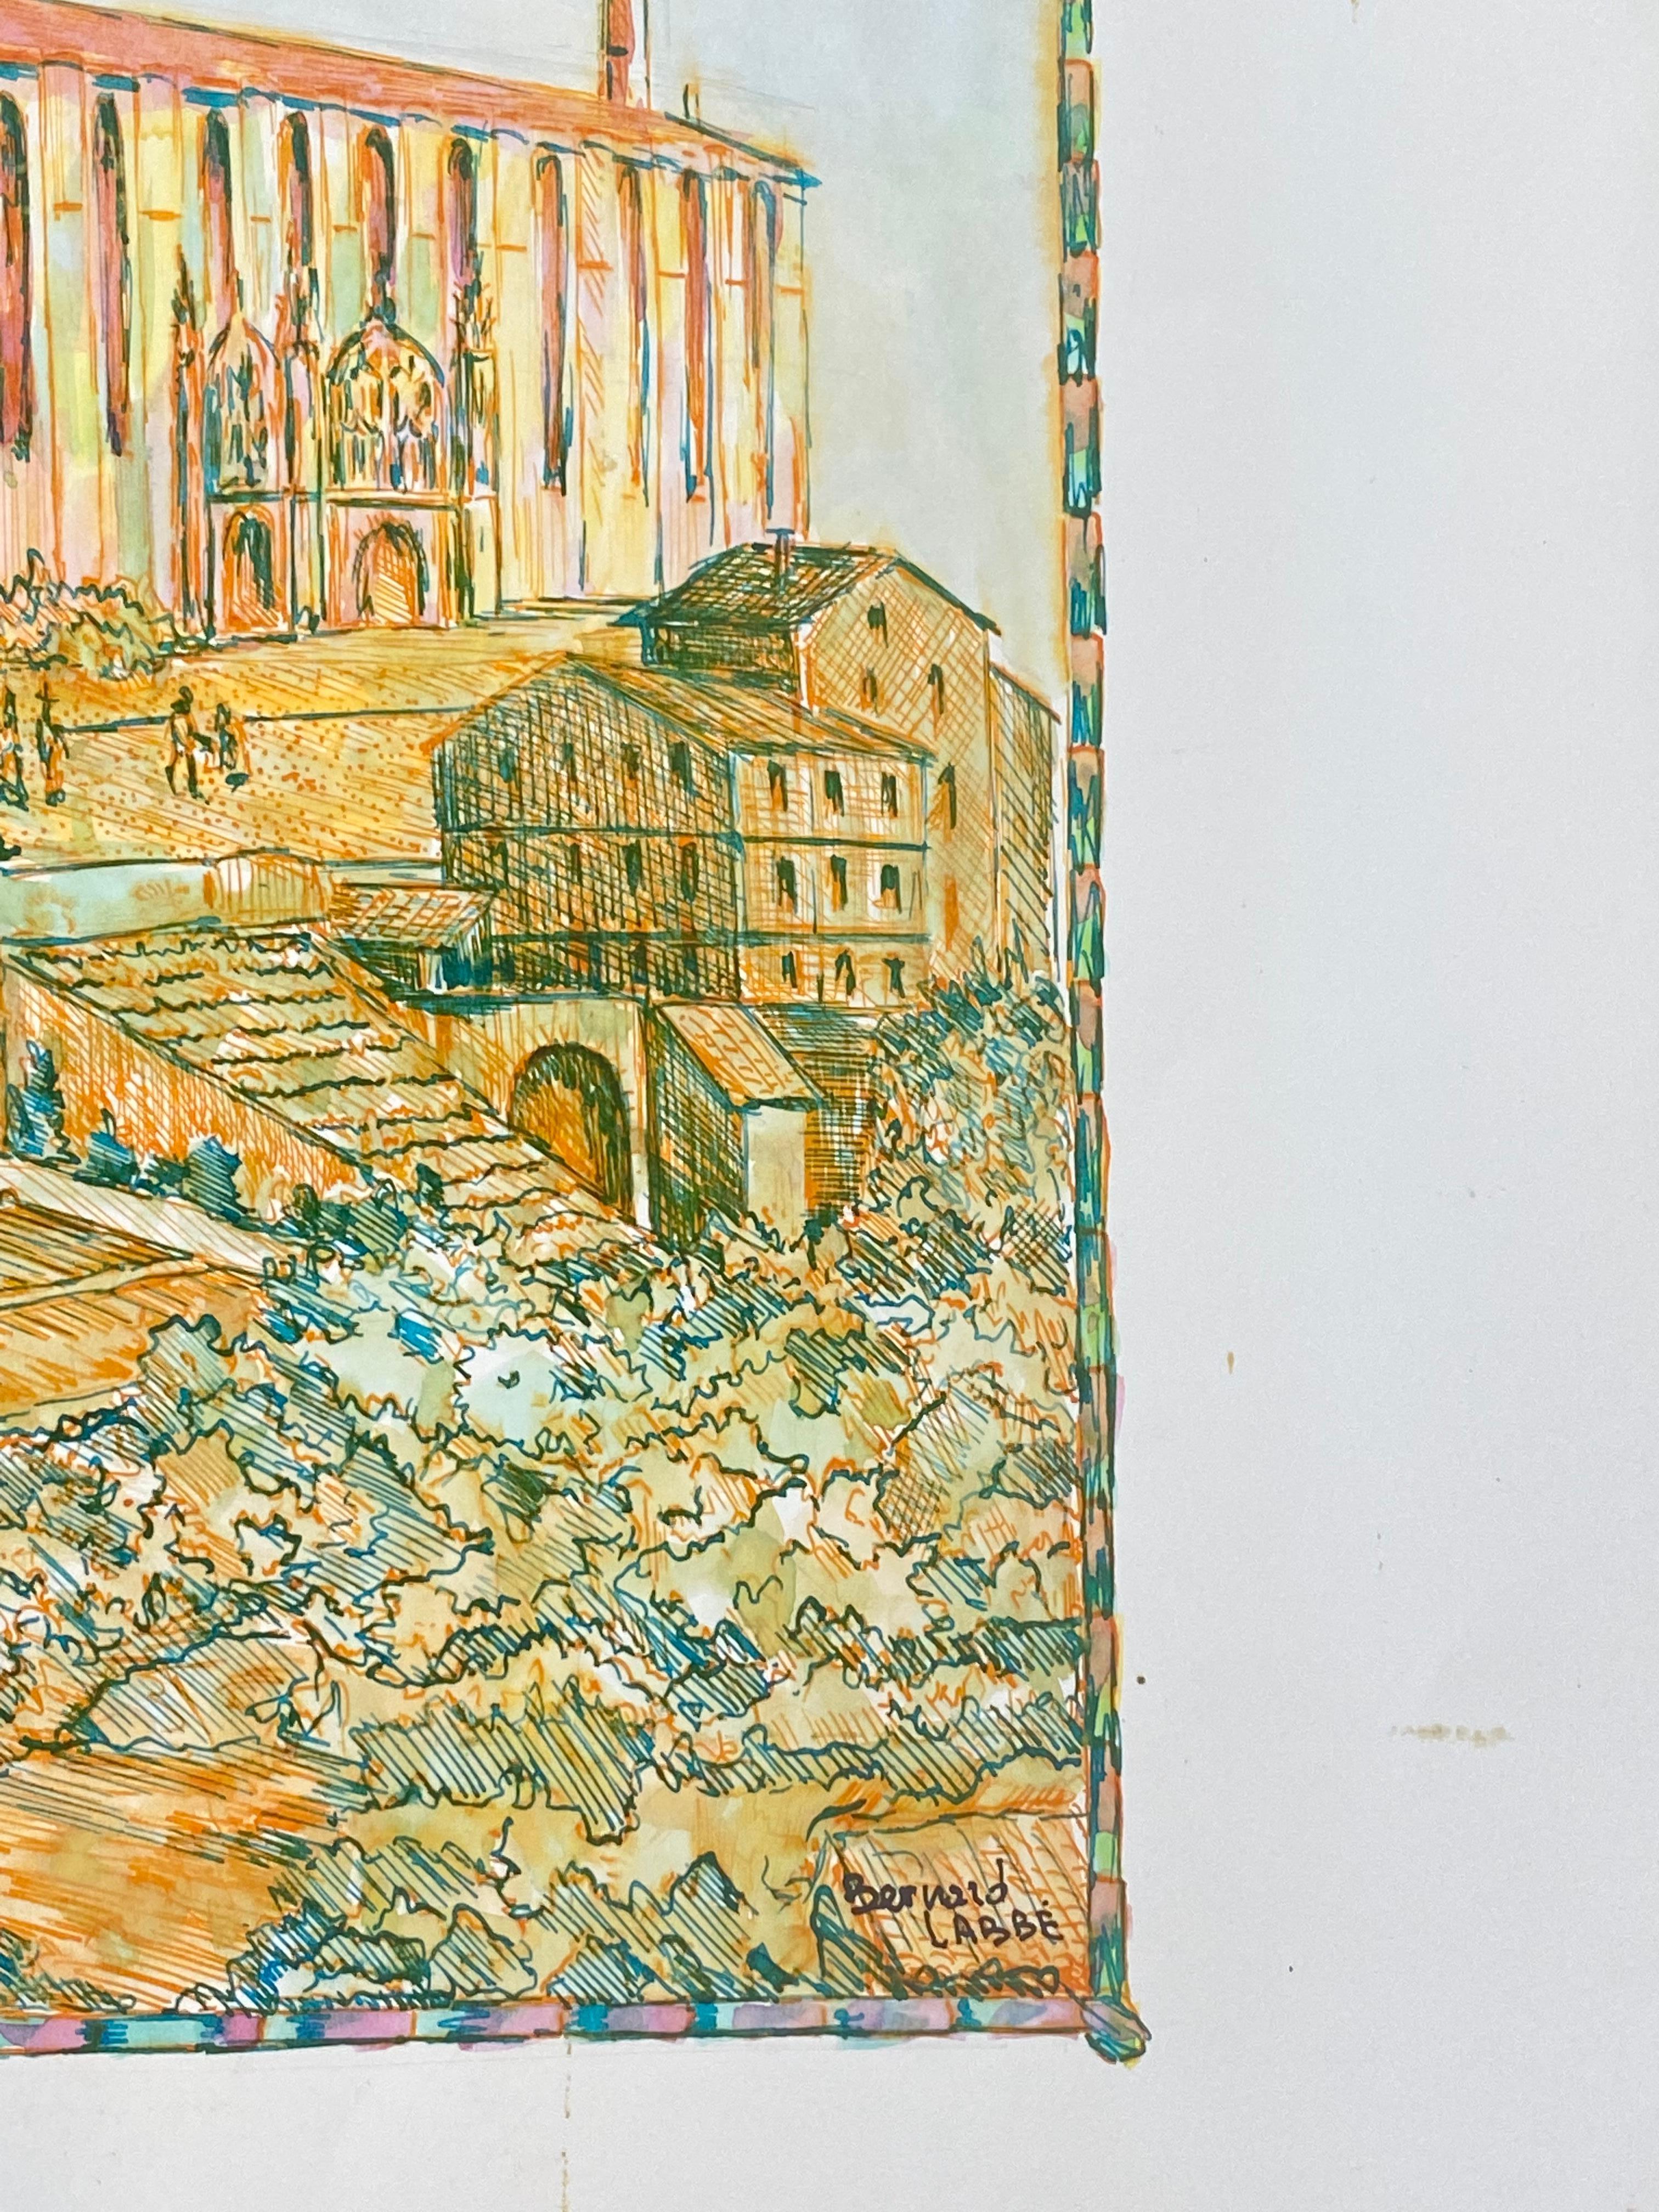 Modernistische/ kubistische Malerei der 1950er Jahre – französische Kathedralenlandschaft in Orange und Rosa, 1950er Jahre (Beige), Landscape Art, von Bernard Labbe